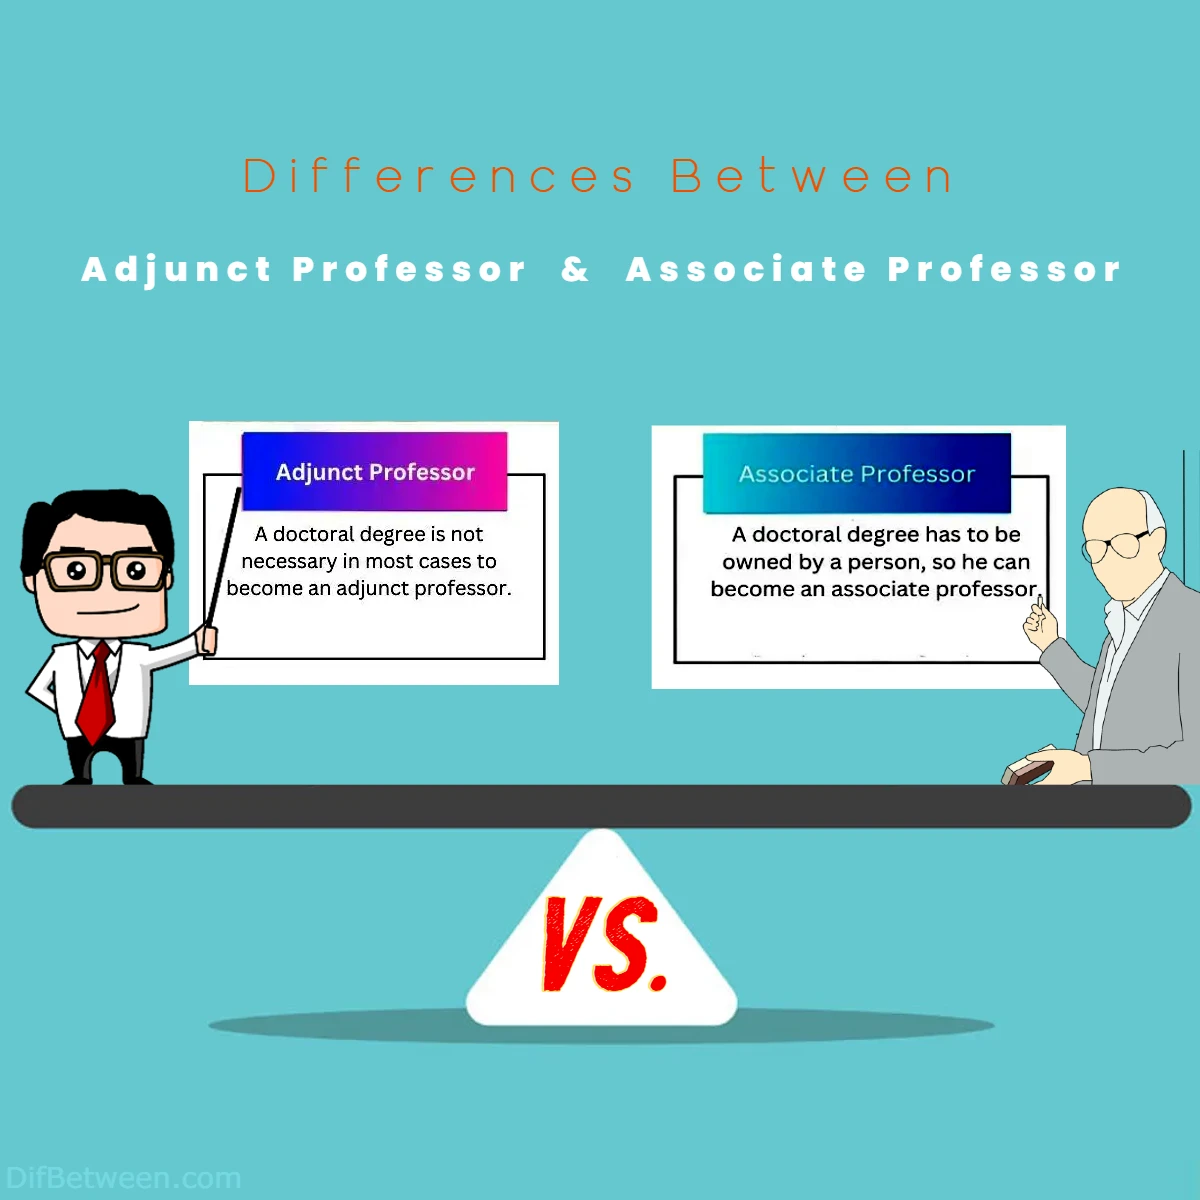 Differences Between Adjunct vs Associate Professor